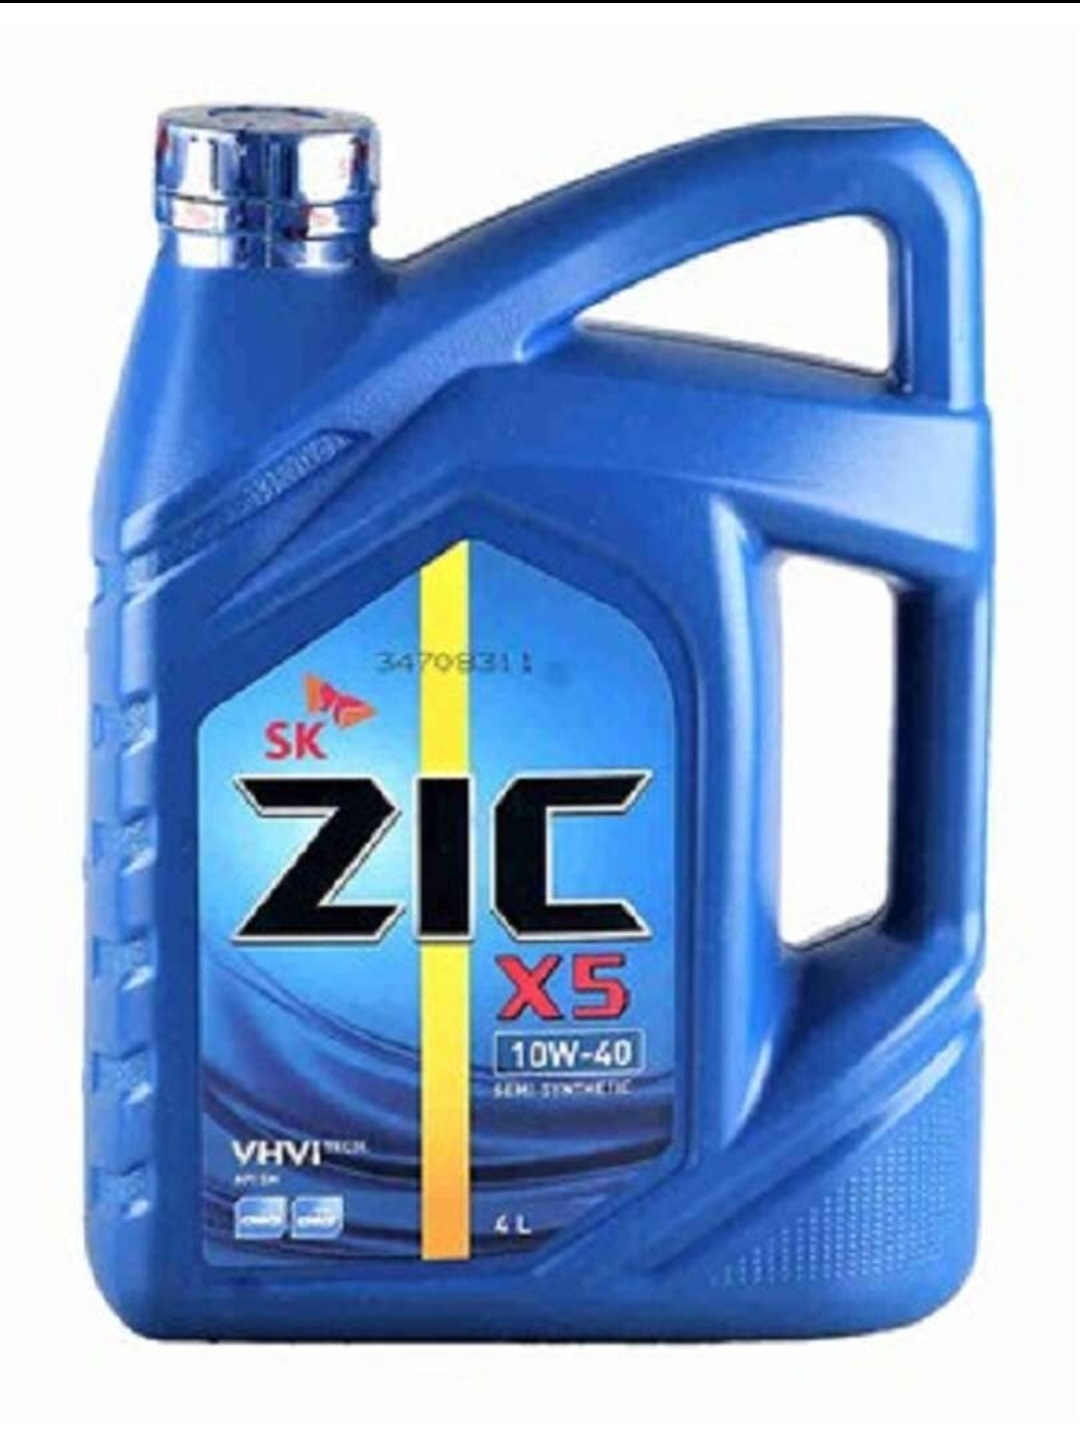 Zic x7 10w40. ZIC ZIC x5 10w-40, 4л. Моторное масло ZIC x5 10w40 1л. ZIC 162621 ZIC x5 5w-30 4л. ZIC полусинтетика 10w-40 6 л..